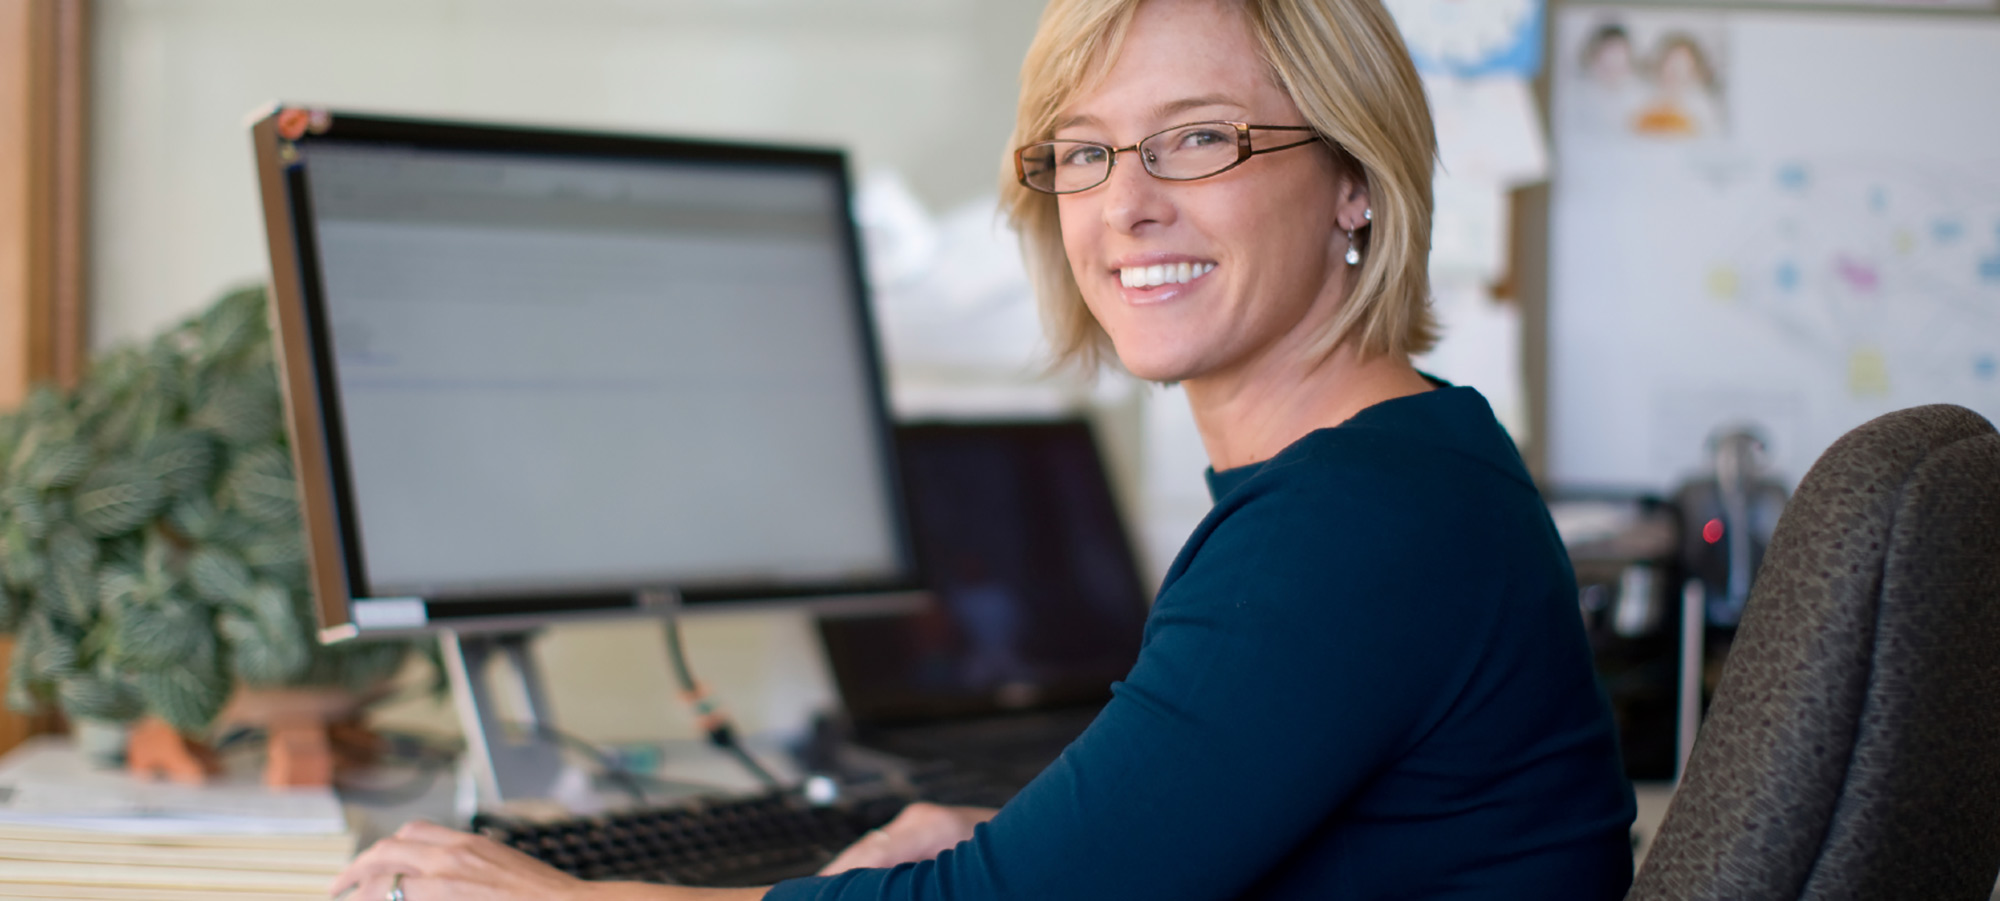 Femme blonde souriante assise devant un écran d'ordinateur